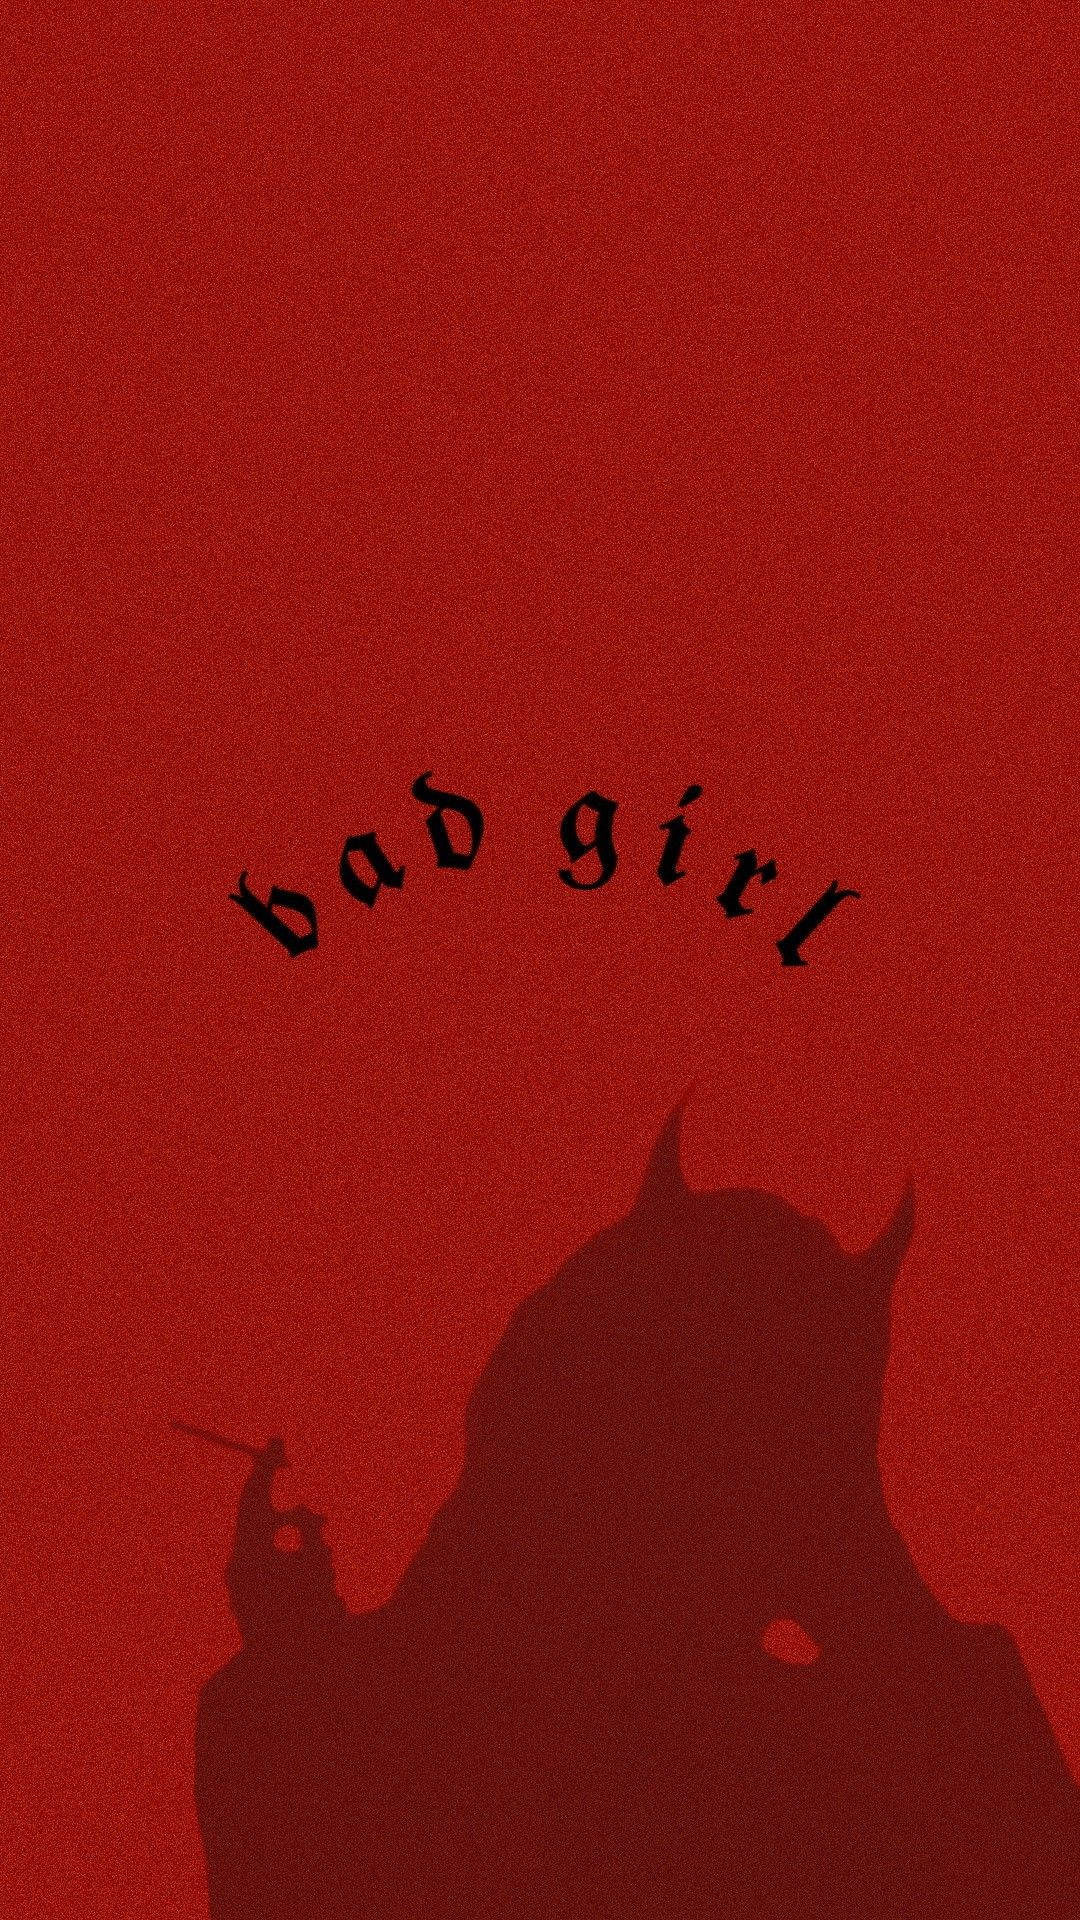 Bad Girl Wallpaper - EnJpg